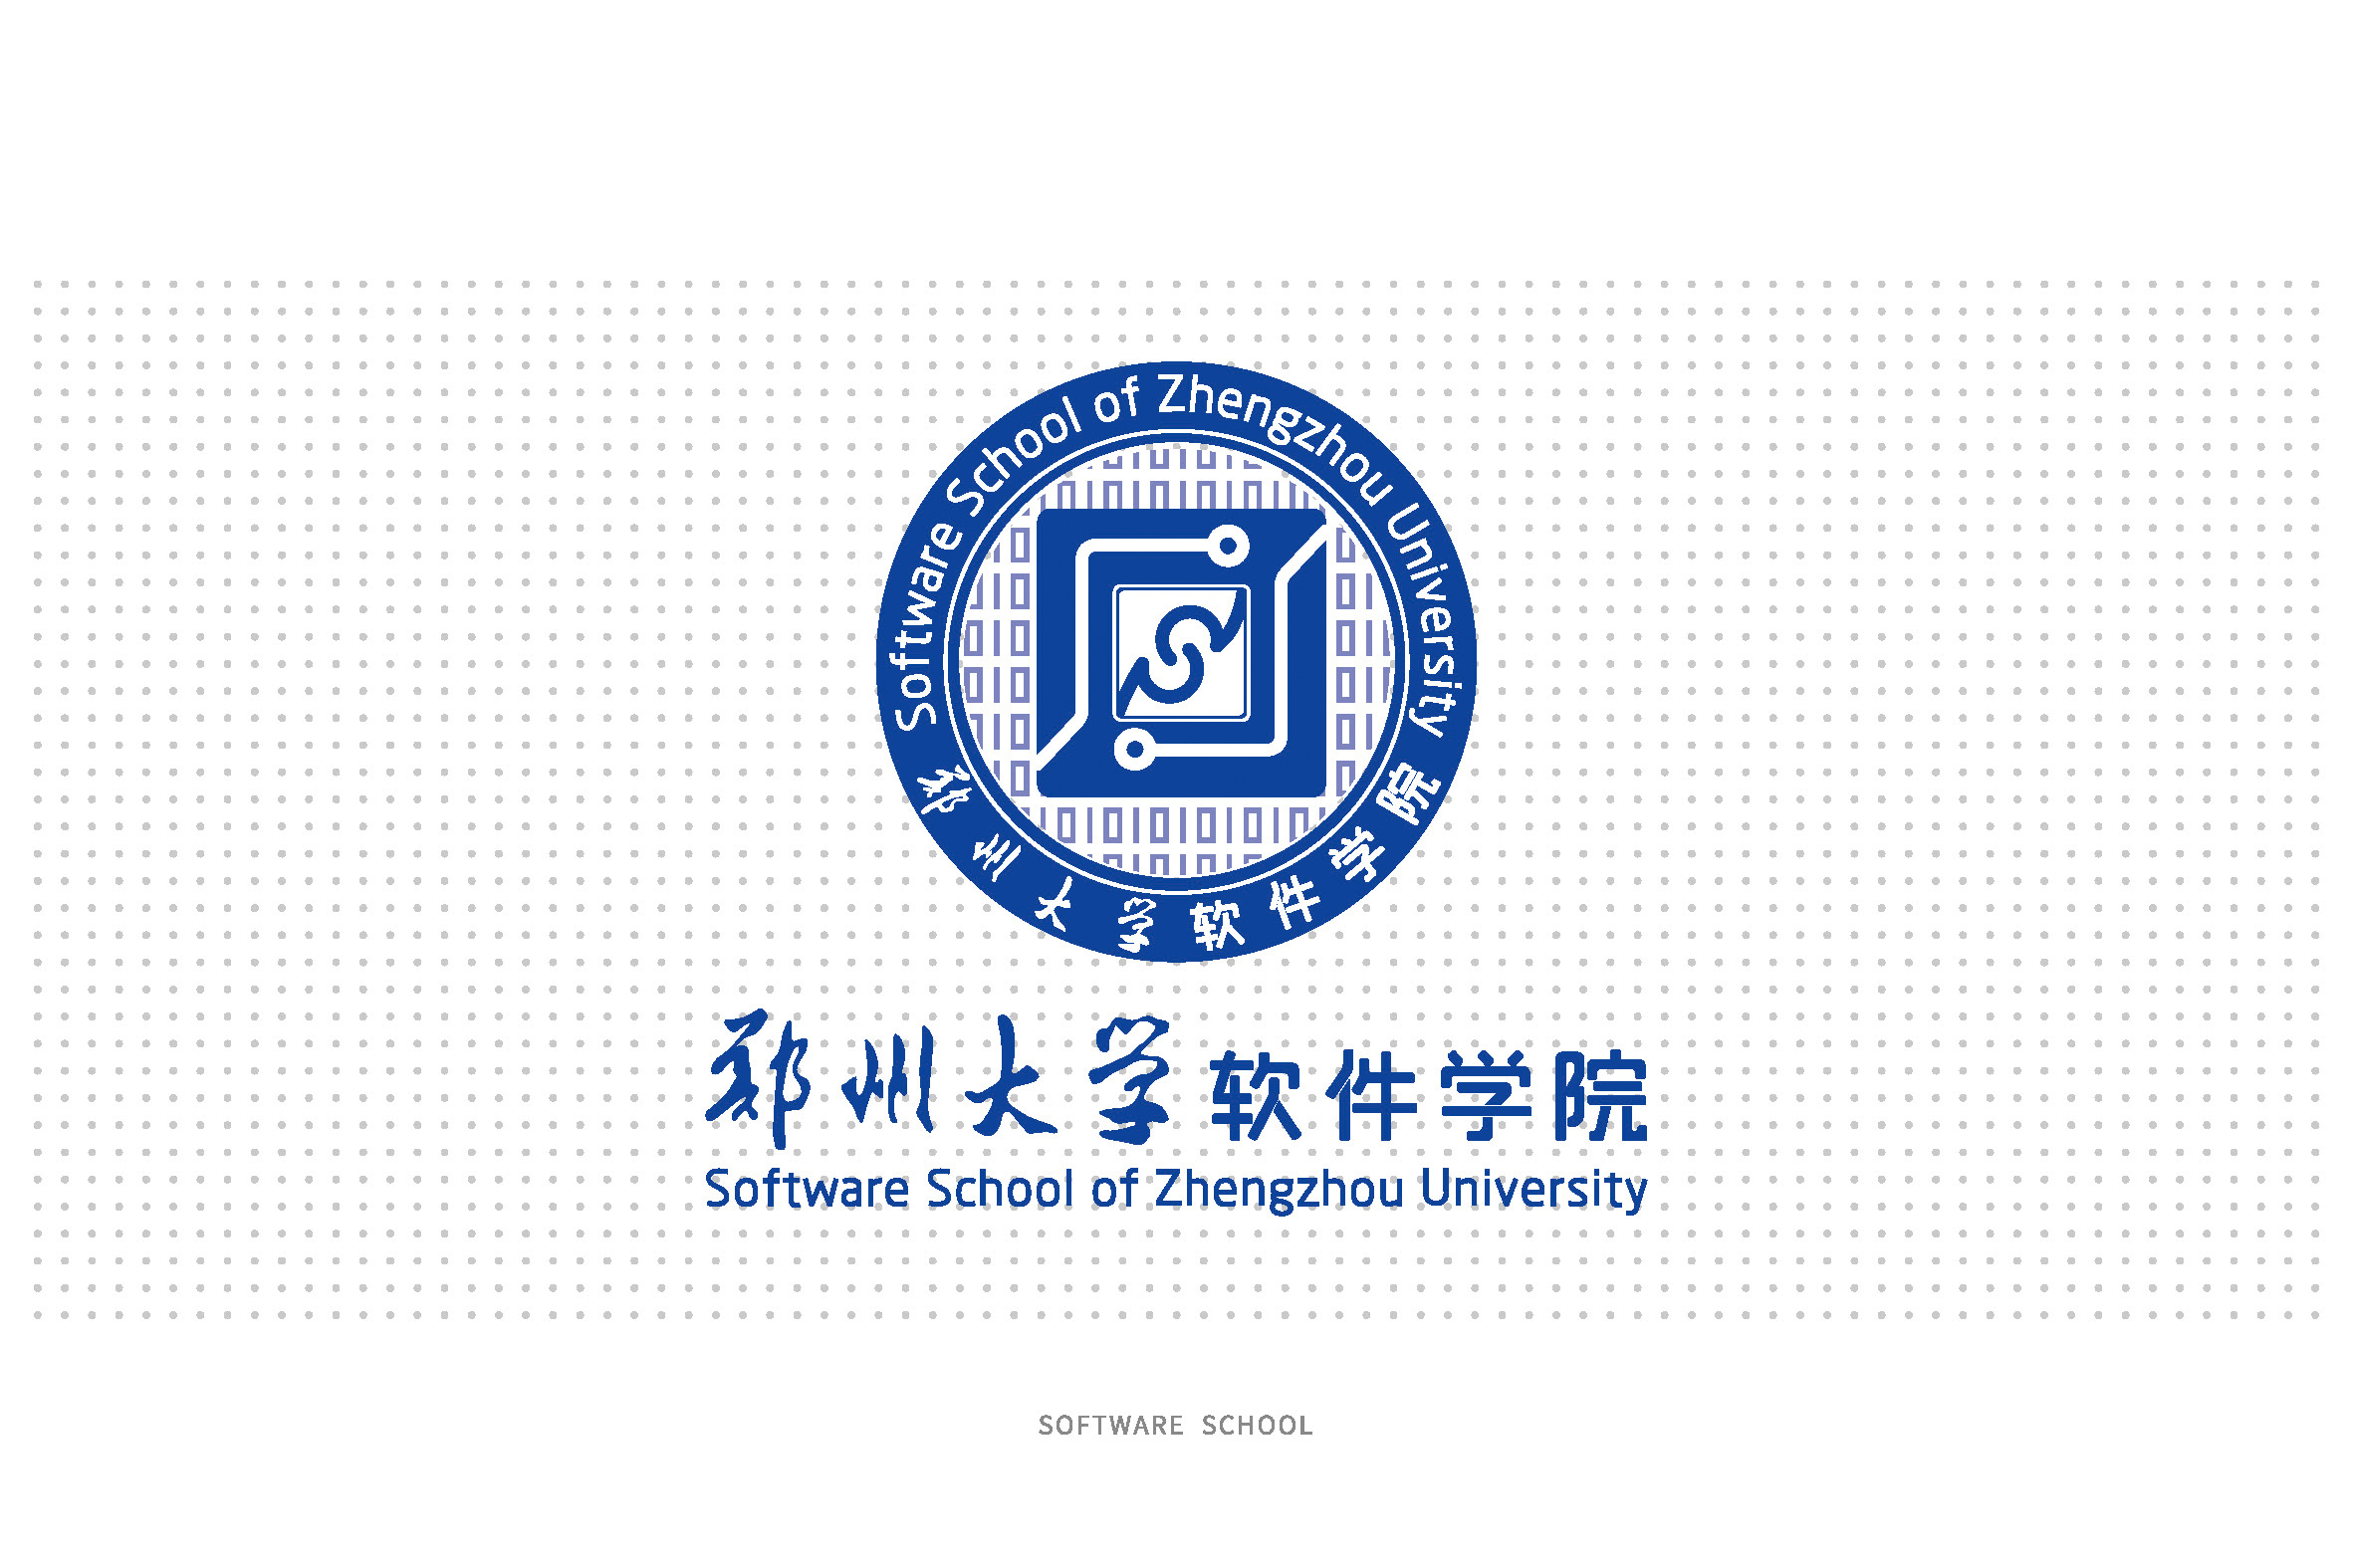 郑州大学软件学院院徽设计